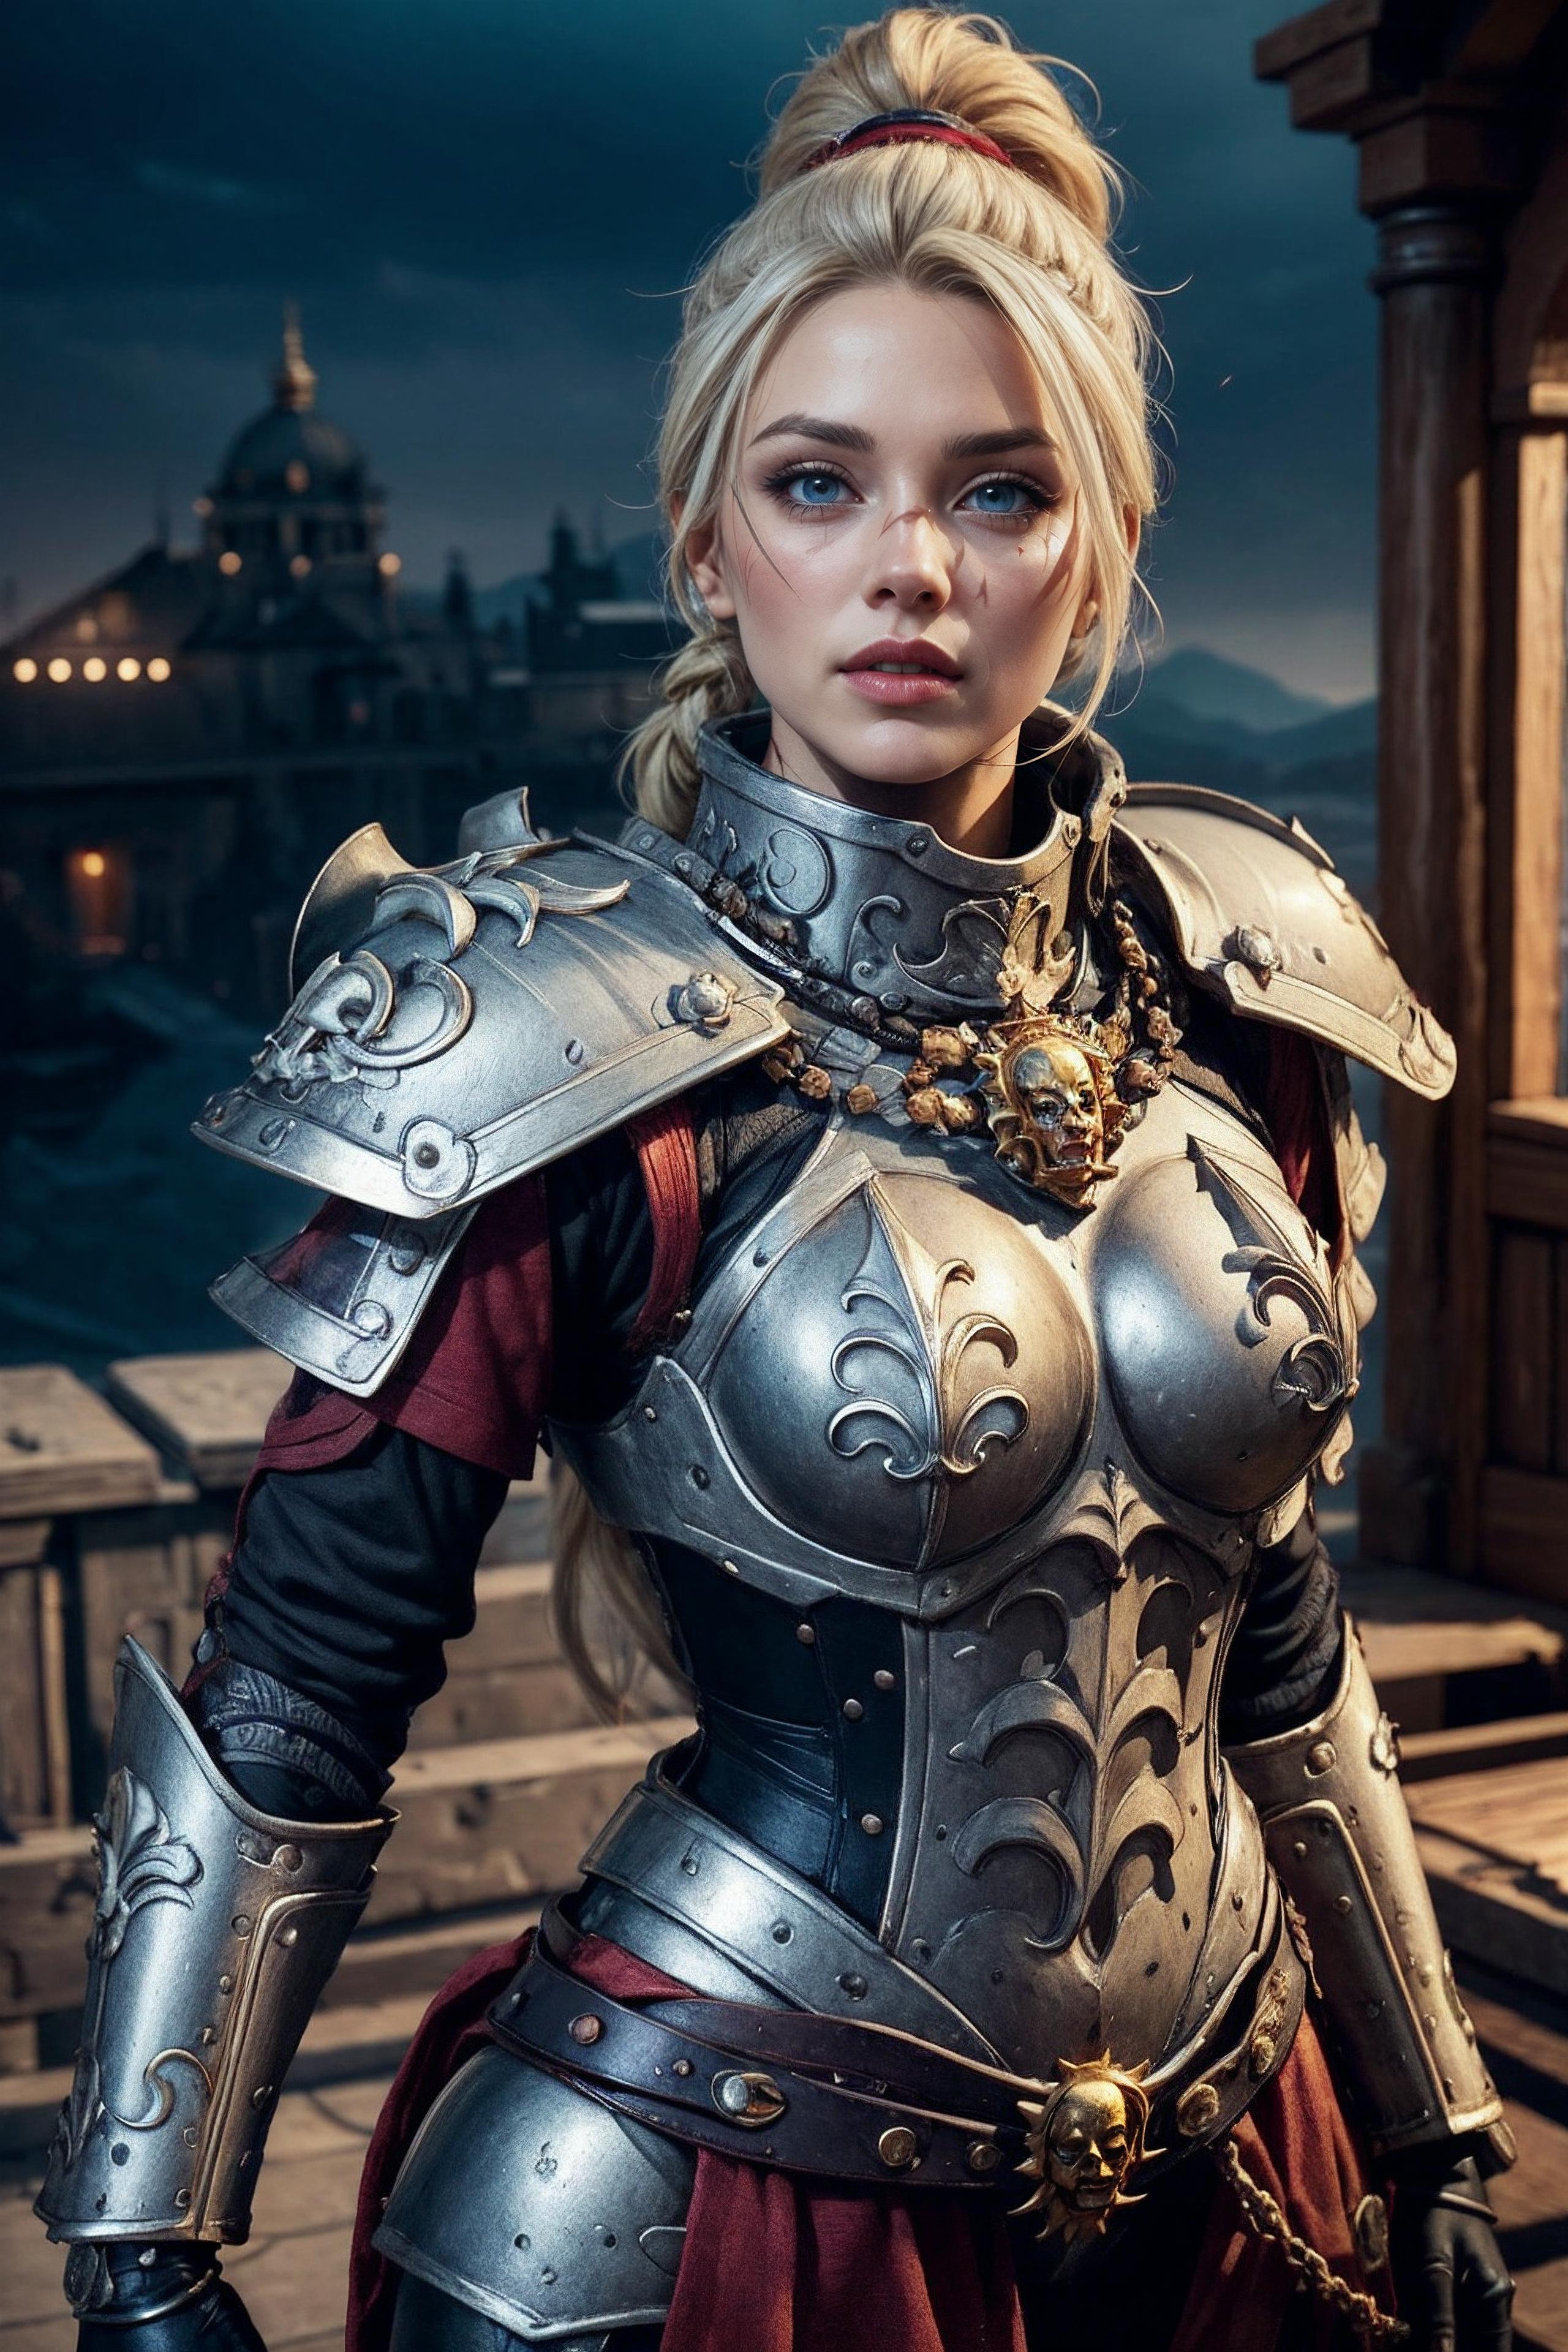 Warhammer 40K Adepta Sororitas Sister of Battle armor - by EDG image by BerserkFG